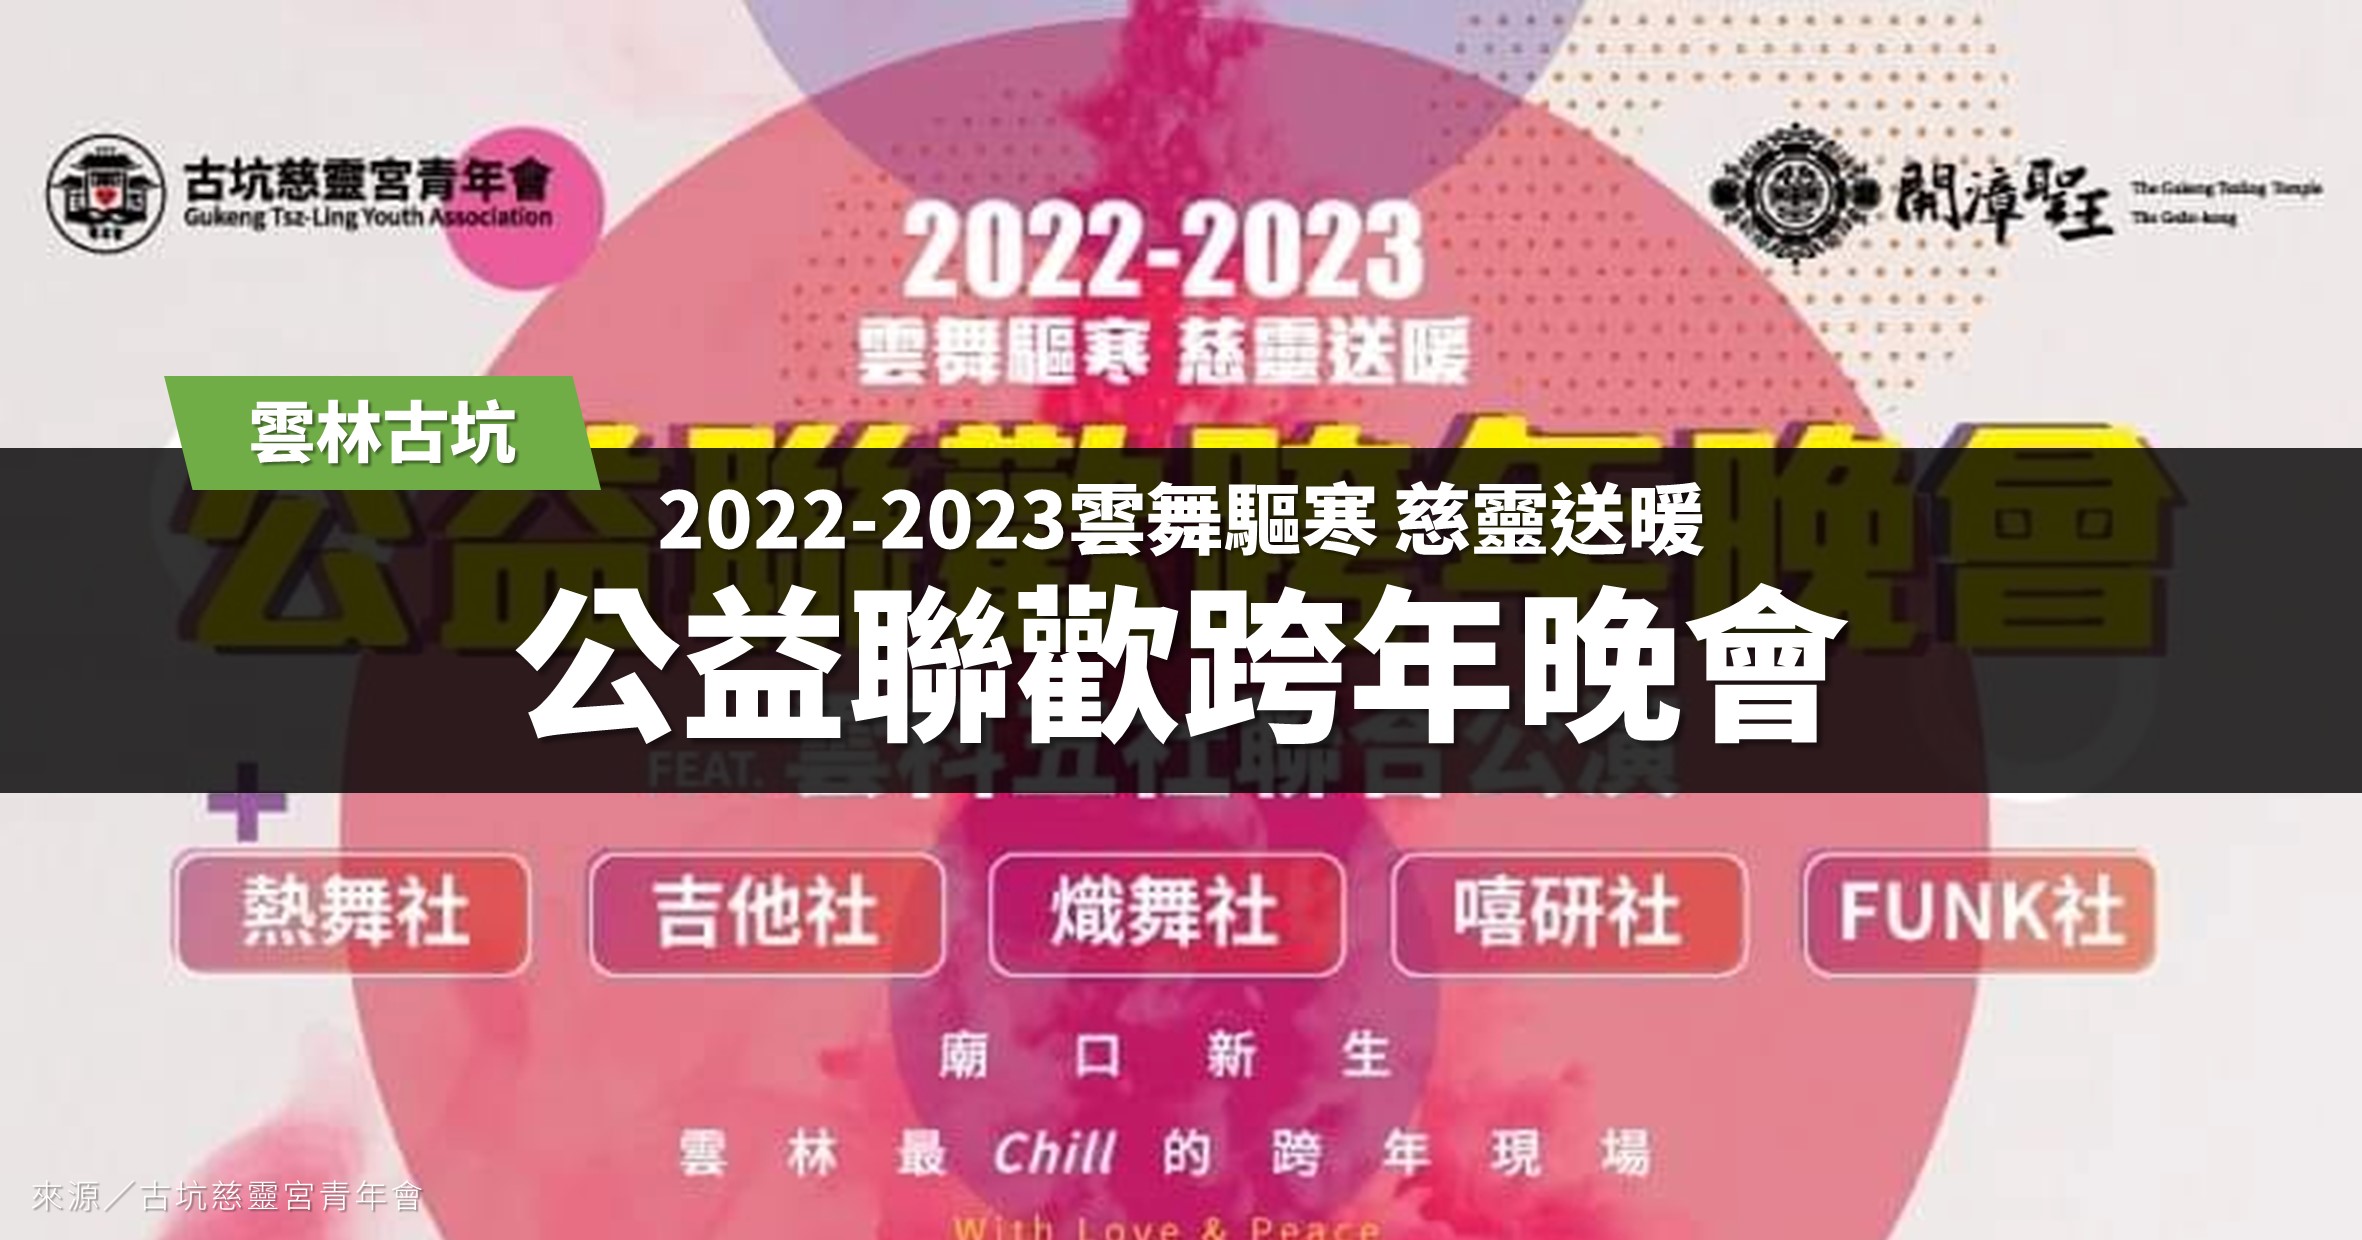 雲林跨年》2022~2023年公益跨年聯歡晚會暨雲科五社聯合公演